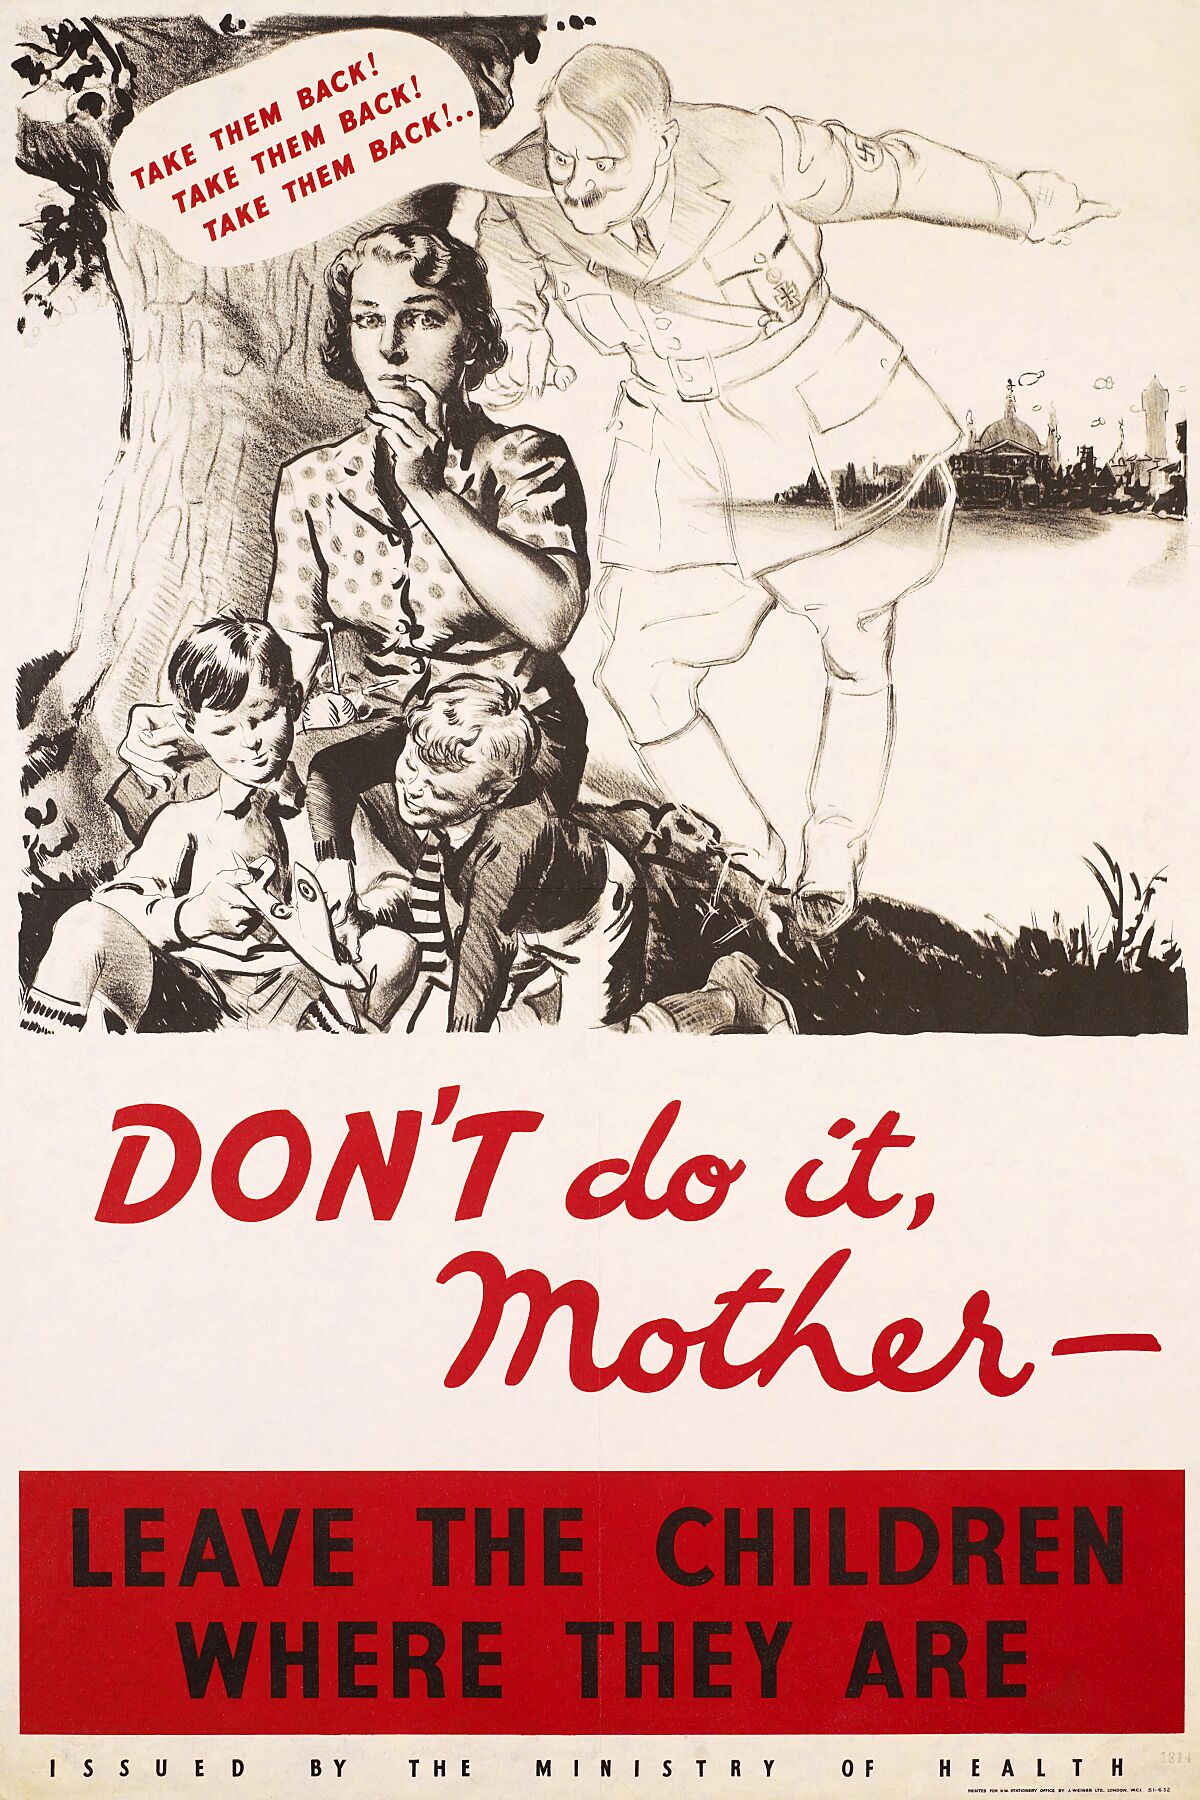 No lo hagas, madre: deja a los niños donde están, Segunda Guerra Mundial. 